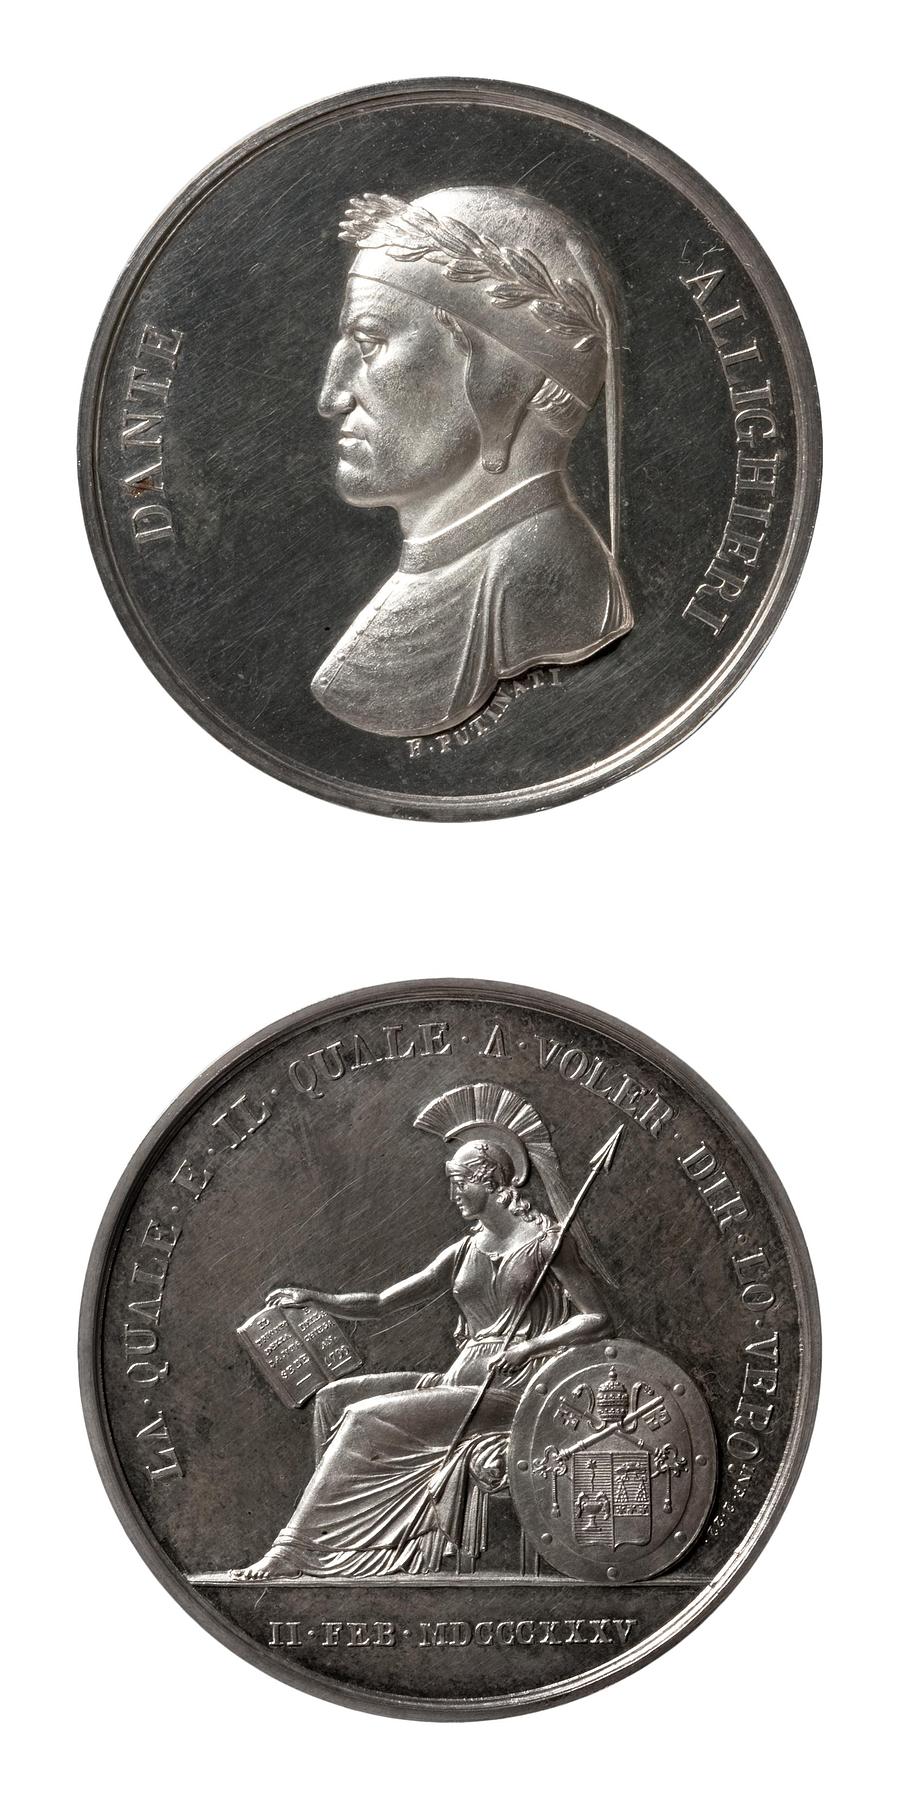 Medaljens forside: Digteren Dante Alighieri. Medaljens bagside: Roma sidder ved et skjold med Gregor 16.s våben, F113